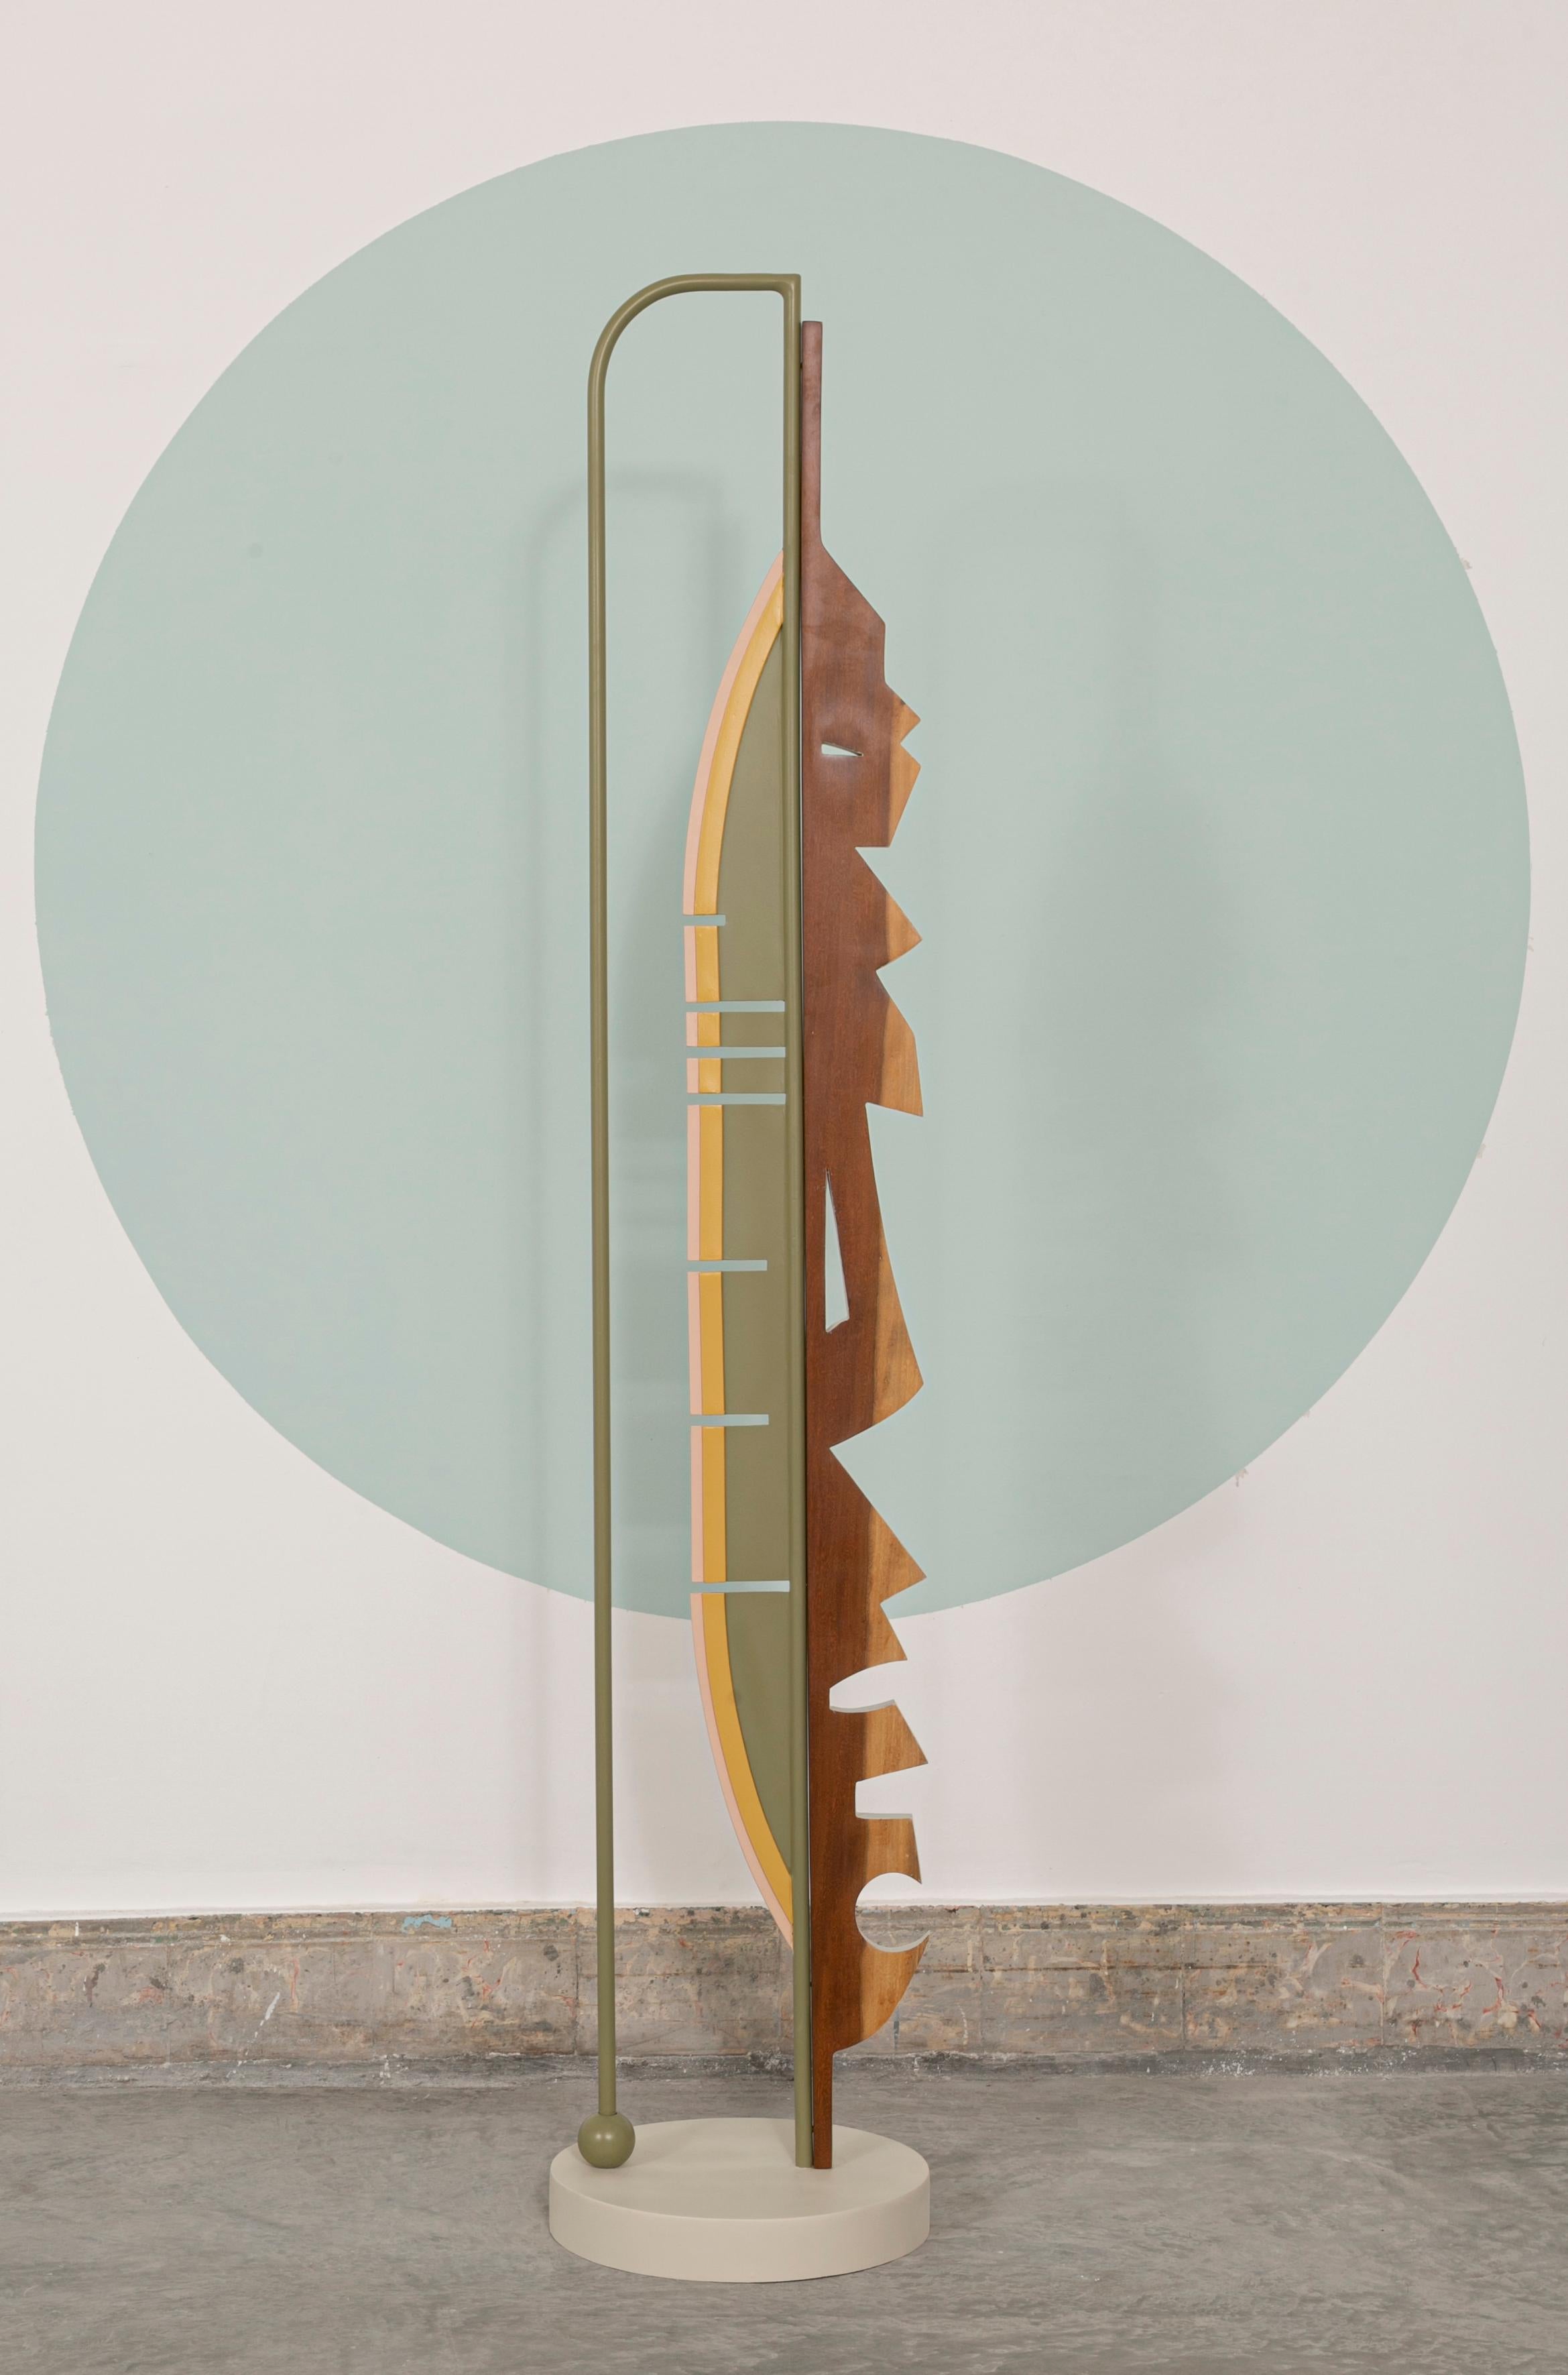 Totem « Cycle of Life » de Sofia Alvarado
Dimensions : D30x H175 cm
MATERIAL : Bois de Guayacán / Métal massif laqué.
Exemplaire unique.

FI est un artiste ornemaniste qui incarne la révélation créative de la sensibilité de l'être inné, avec une